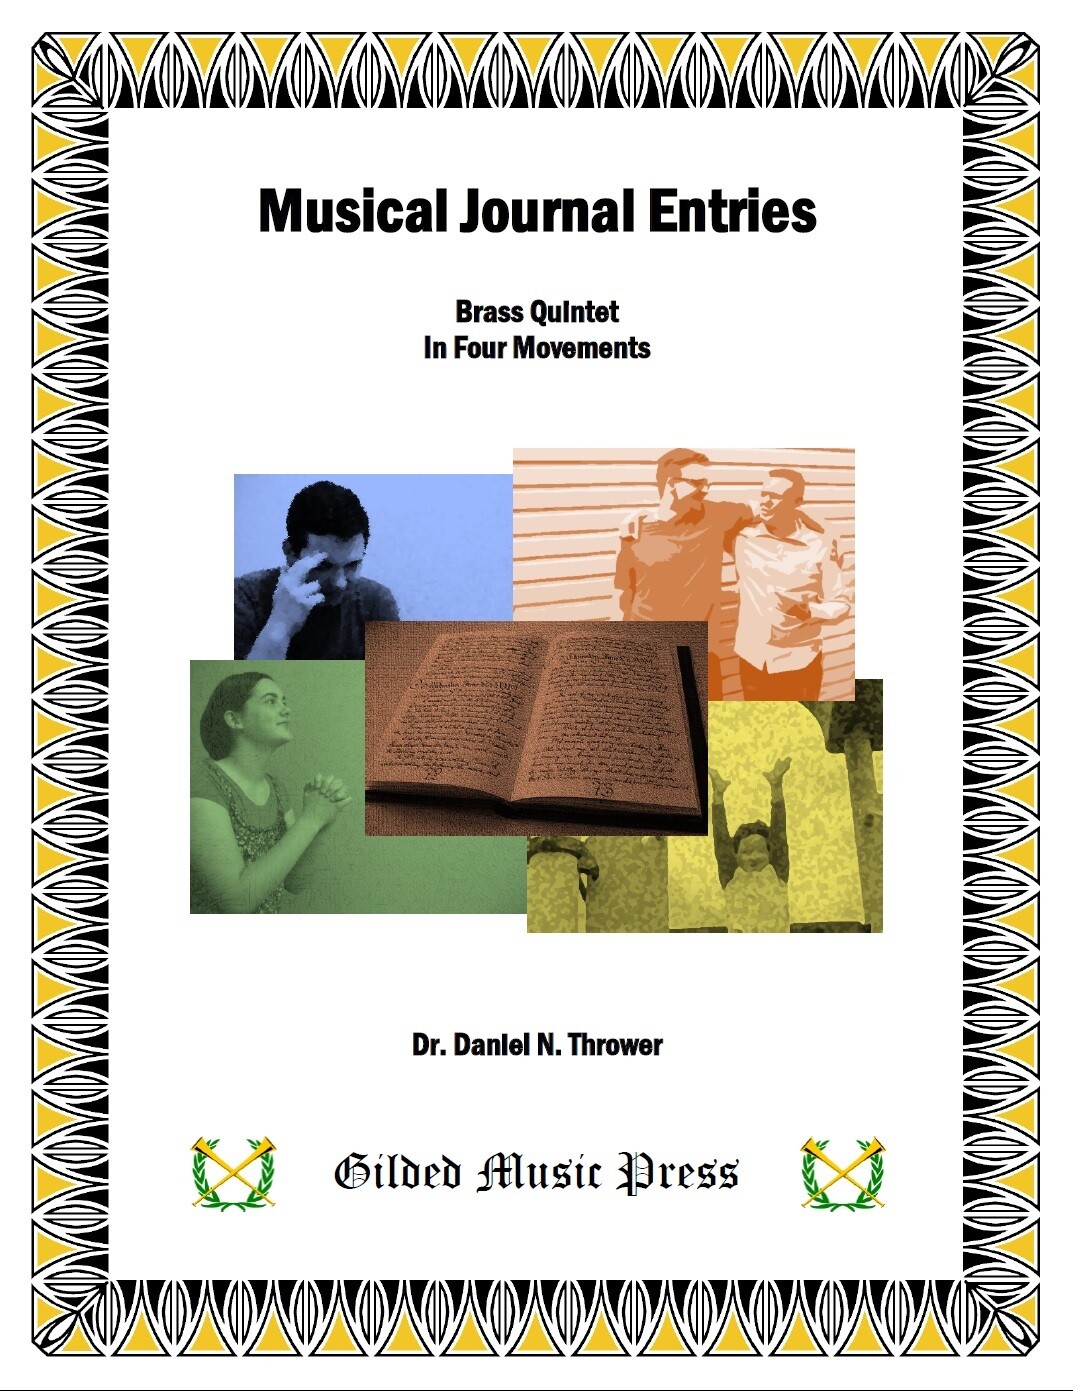 GMP 3019: Musical Journal Entries (Brass Quintet, 4 pieces), Dr. Daniel Thrower